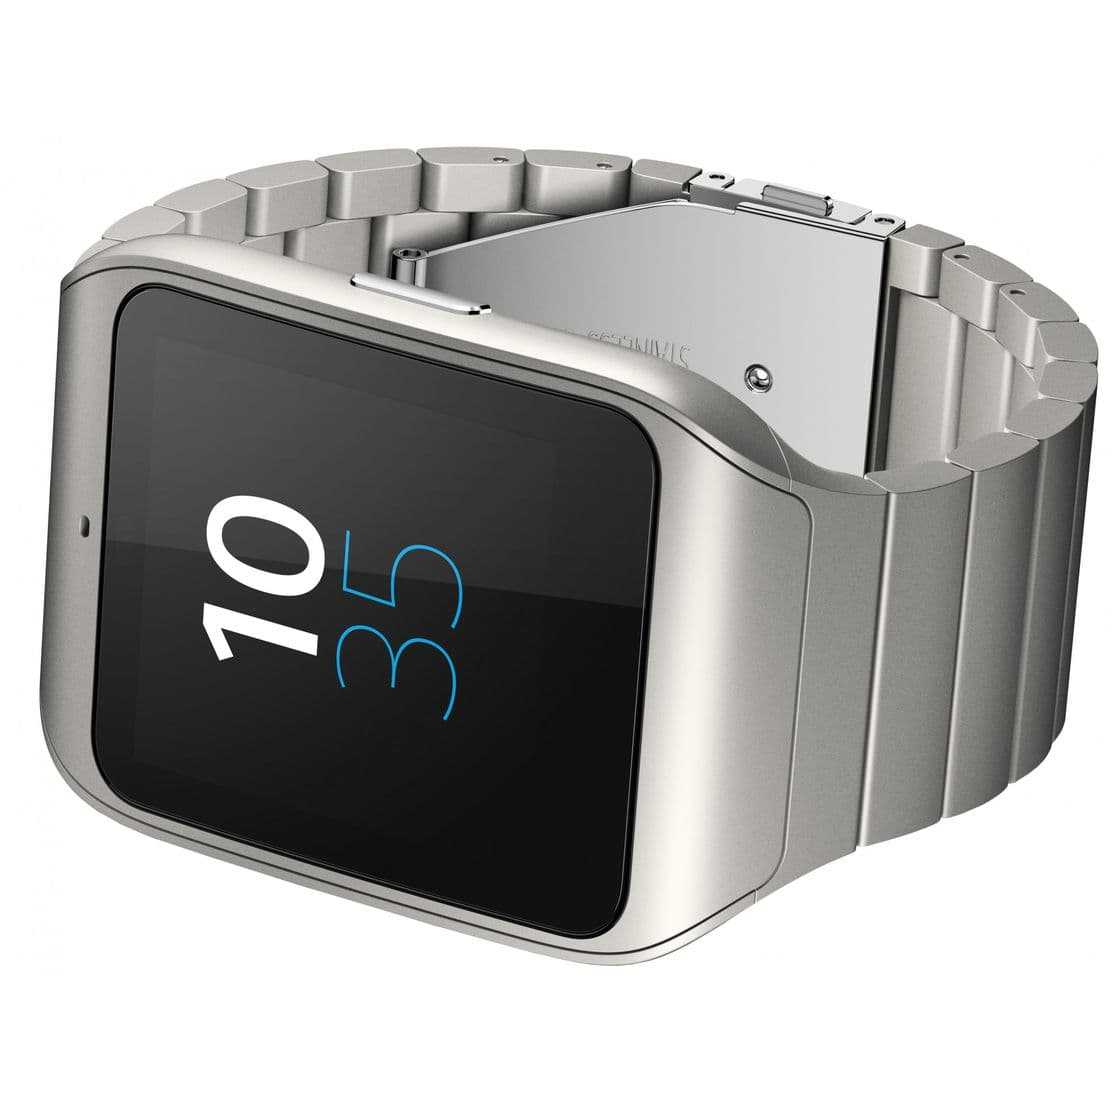 Sony smartwatch 3 swr50 купить по акционной цене , отзывы и обзоры.